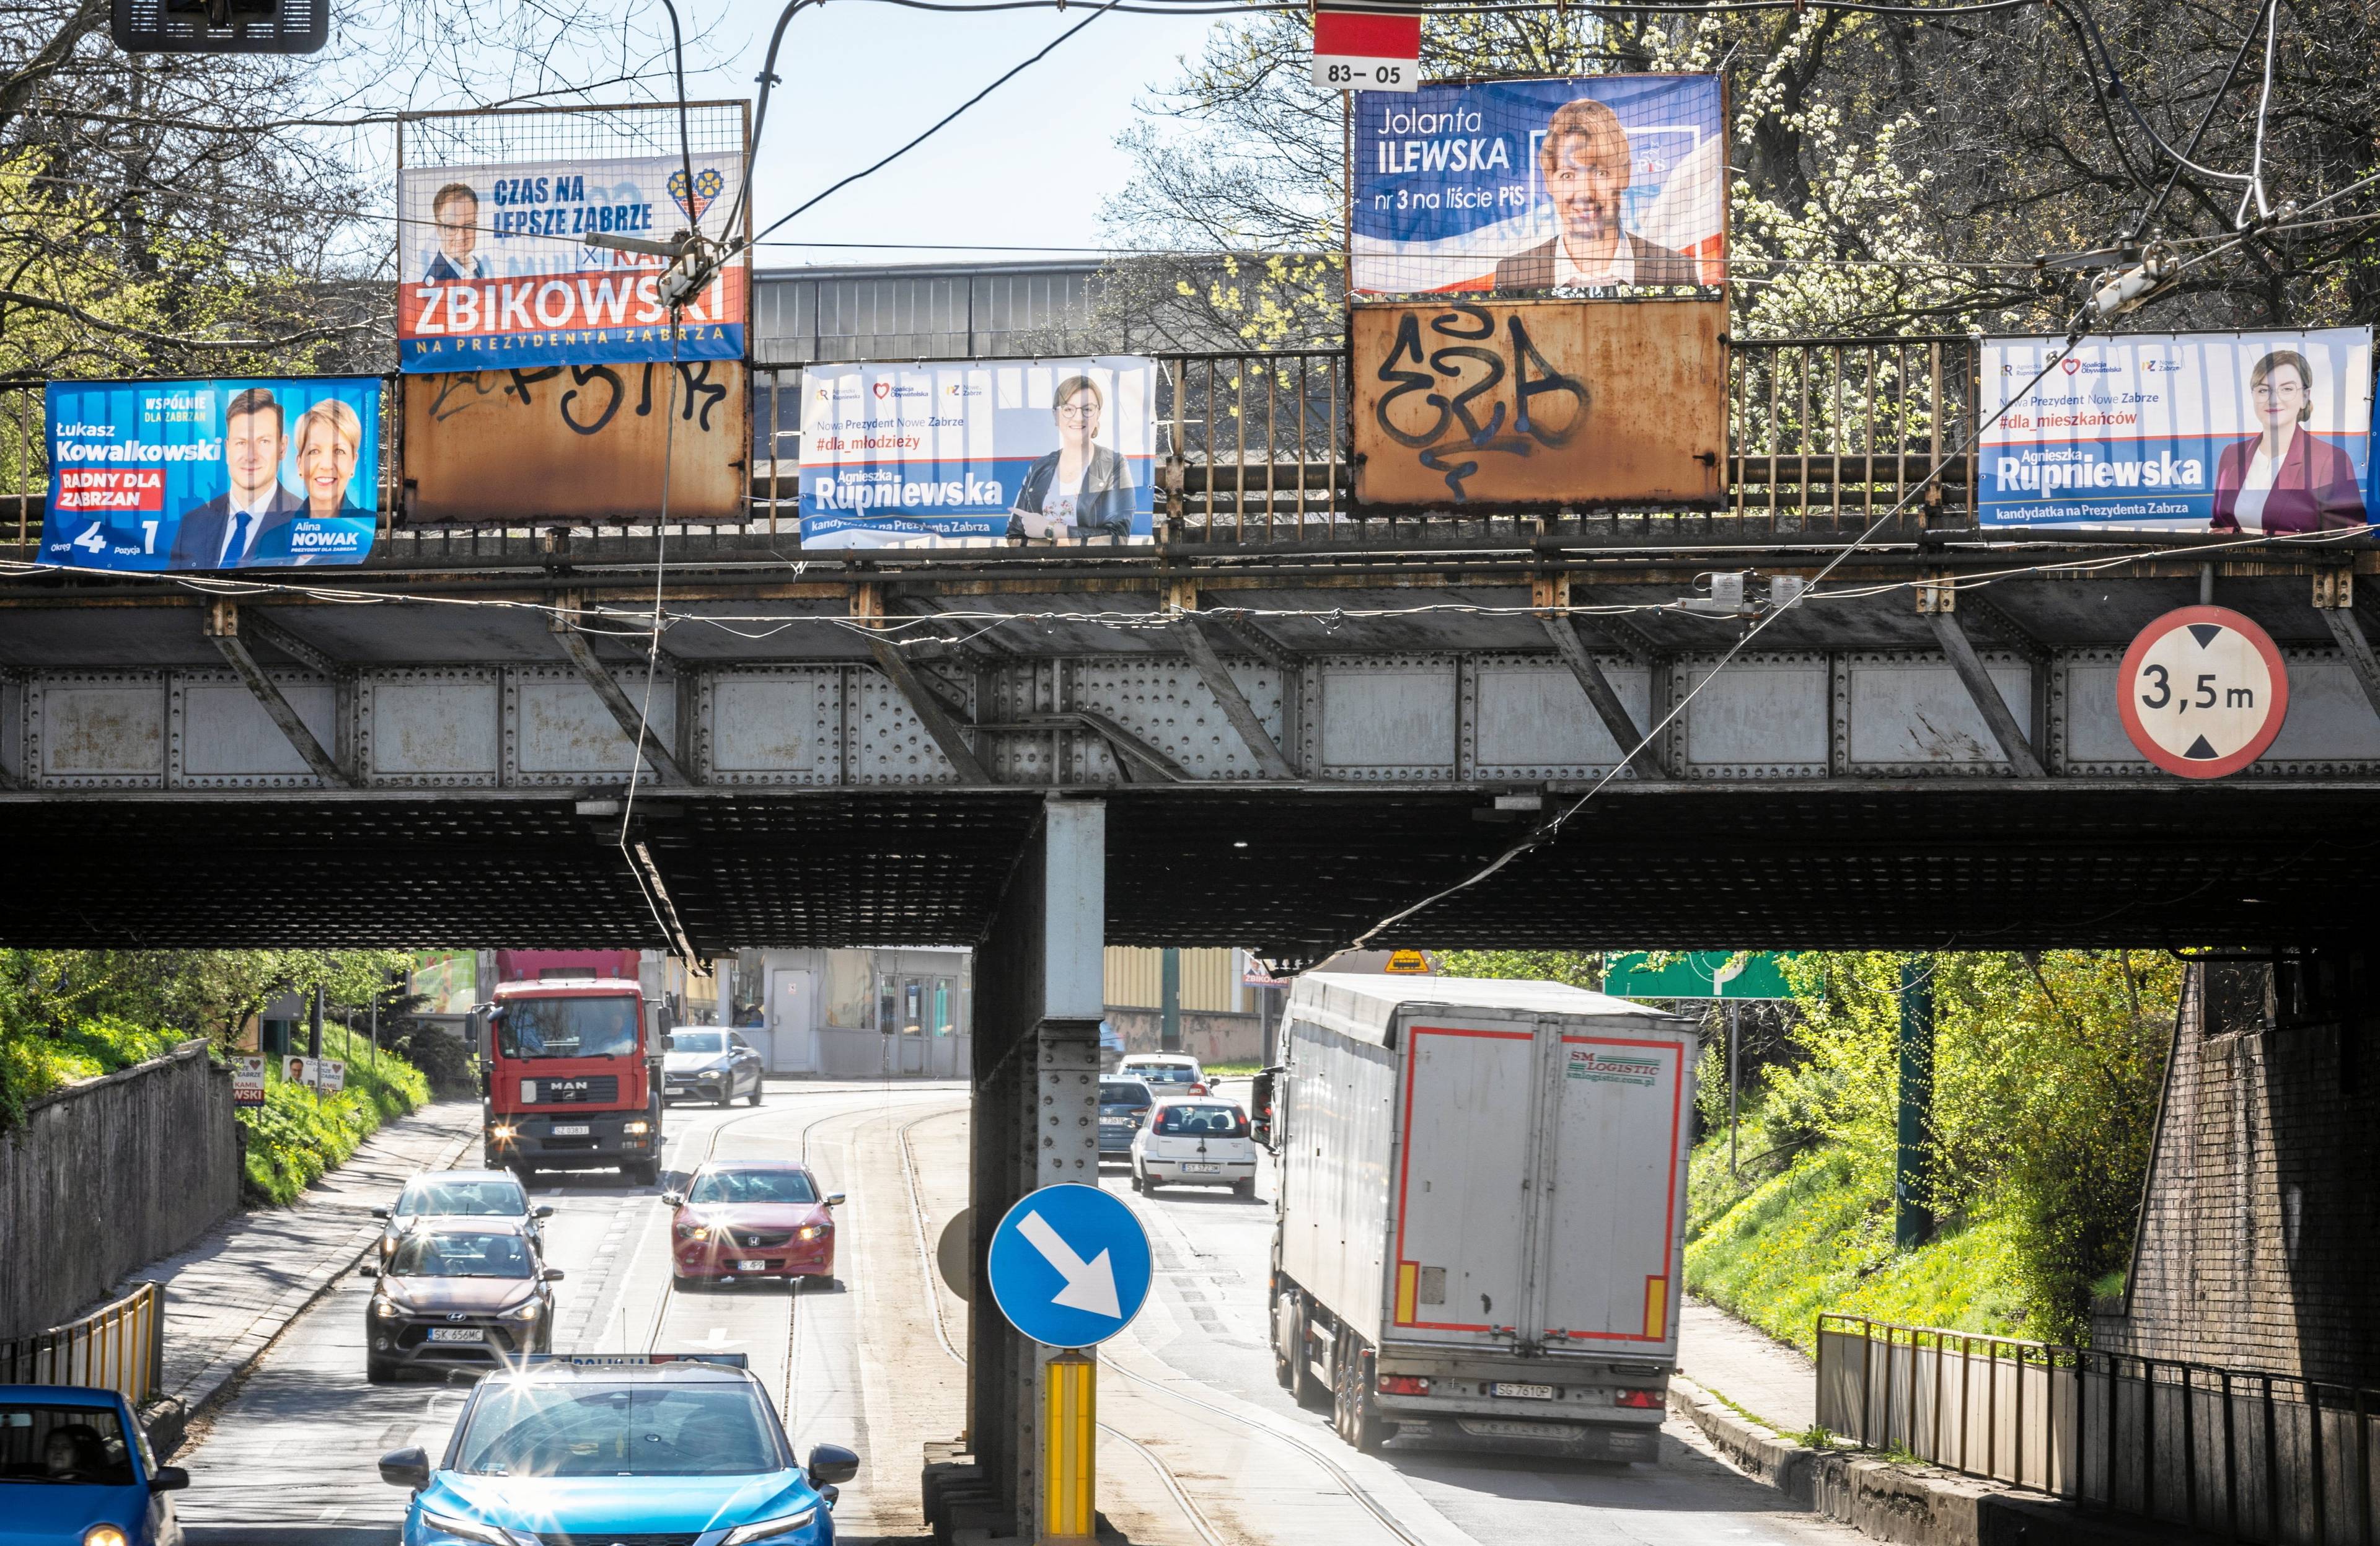 Widok na wiadukt drogowy oklejonym plakatami wyborczymi